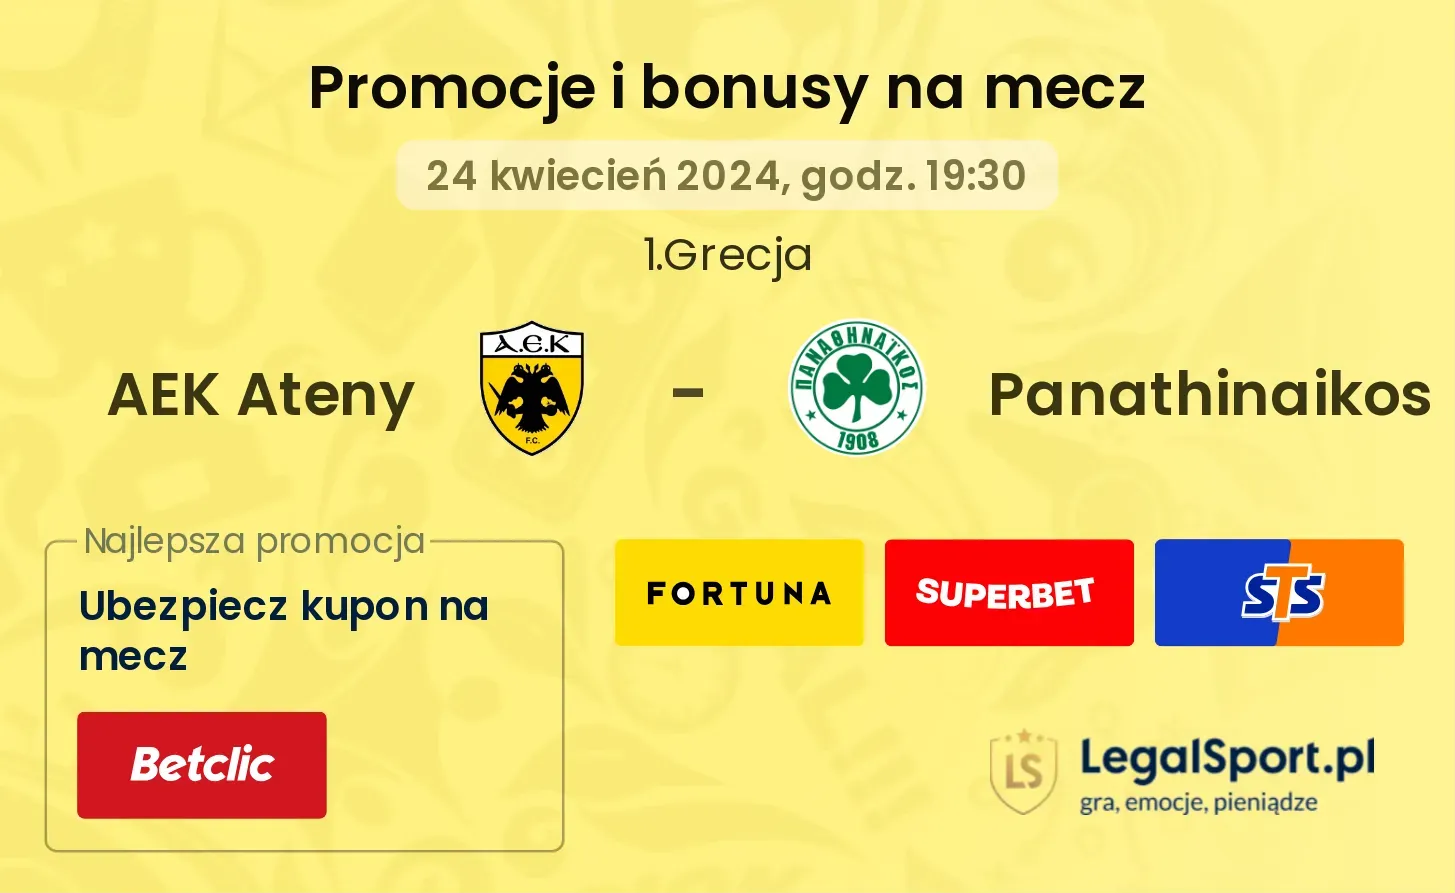 AEK Ateny - Panathinaikos promocje bonusy na mecz